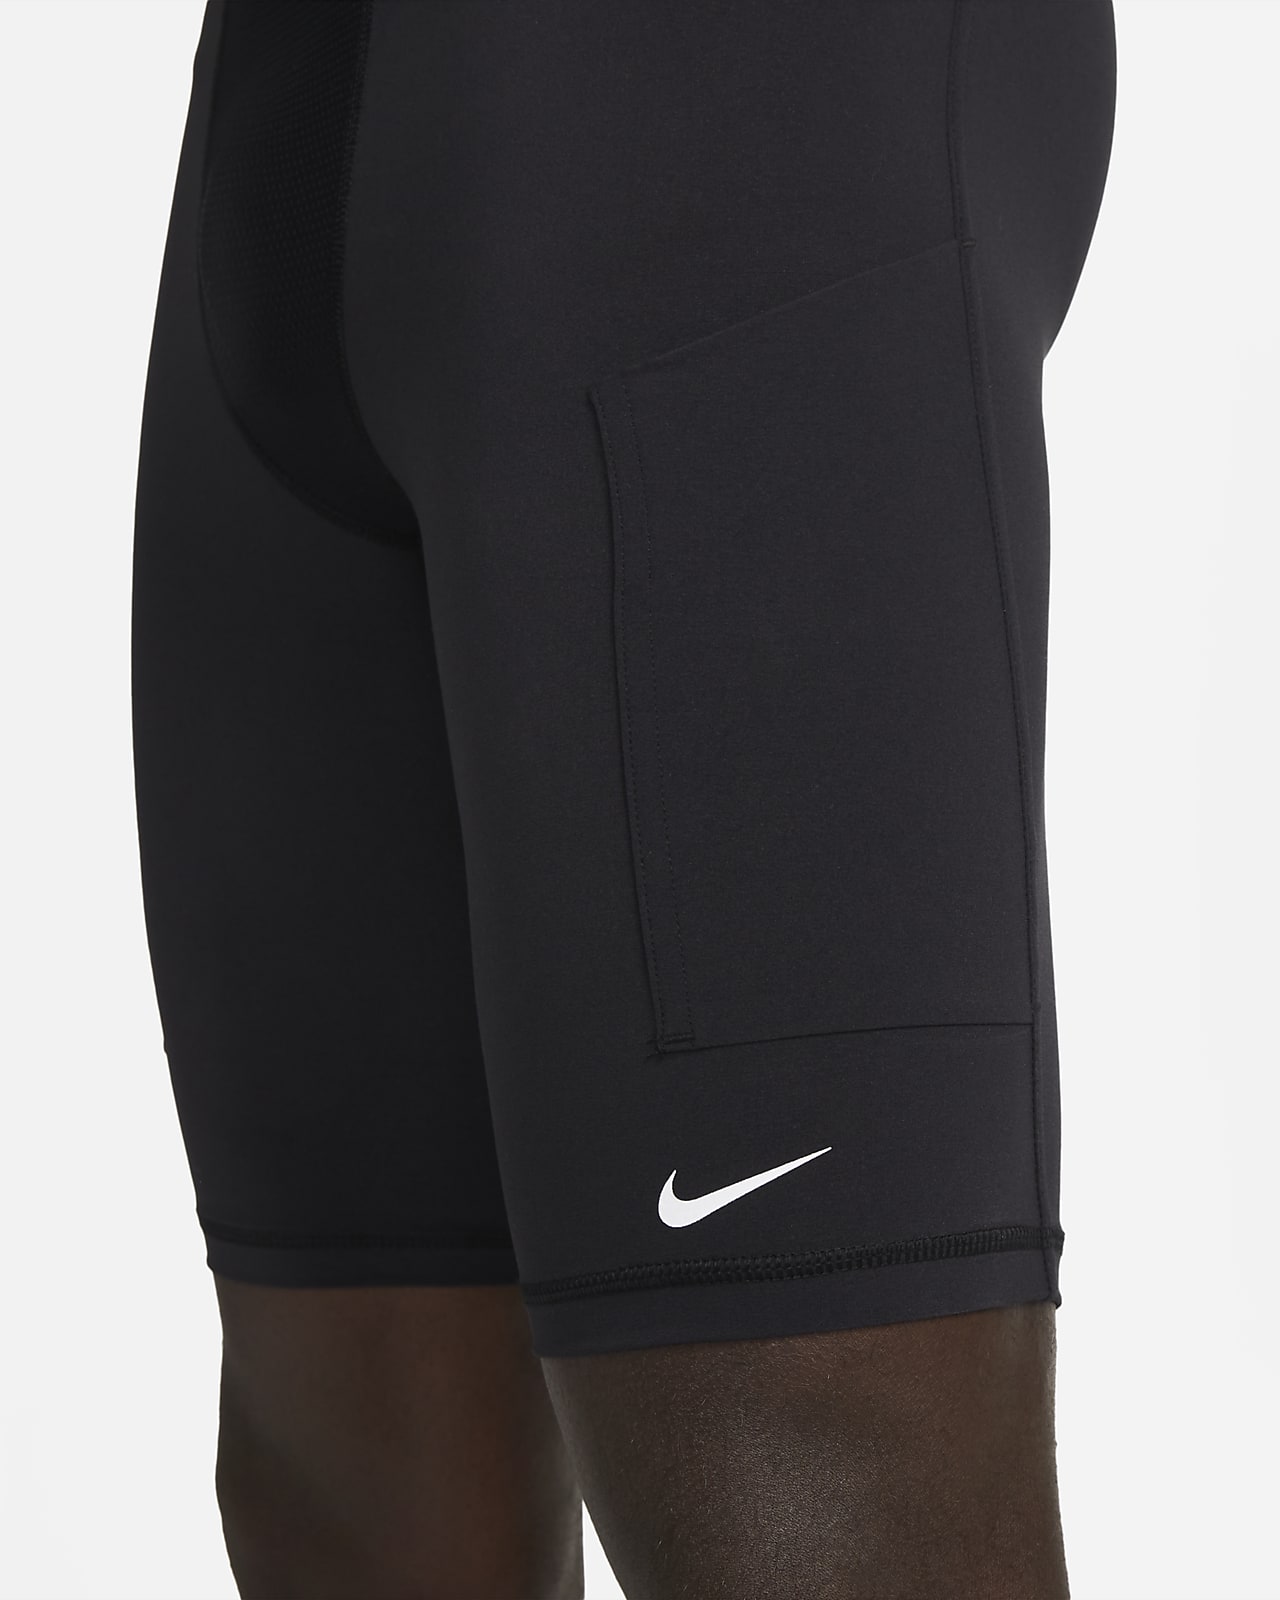 Men's Nike Pro Dri-FIT Base Layer Leggings